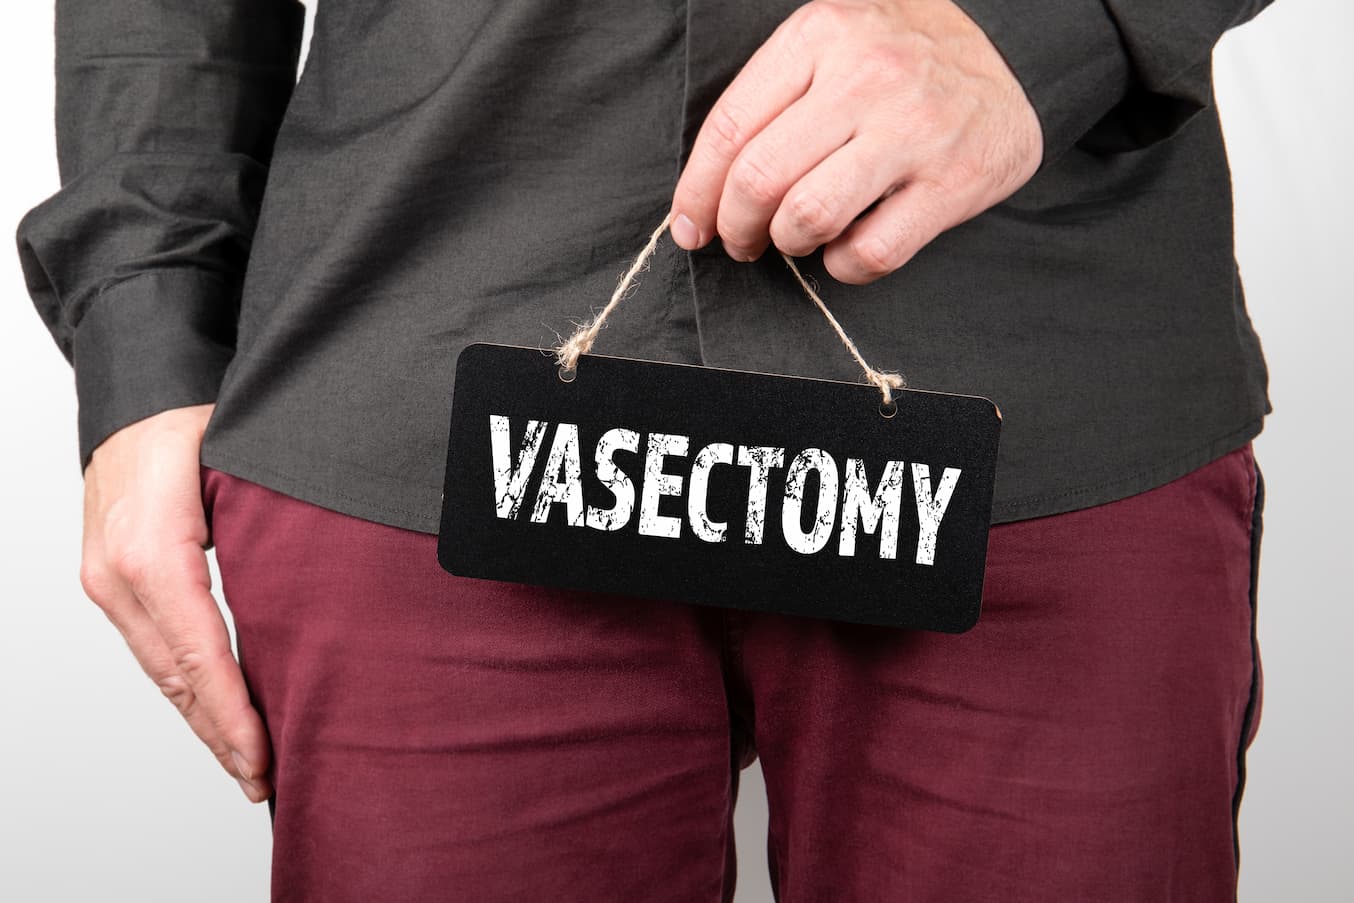 Vasectomy in turkiye